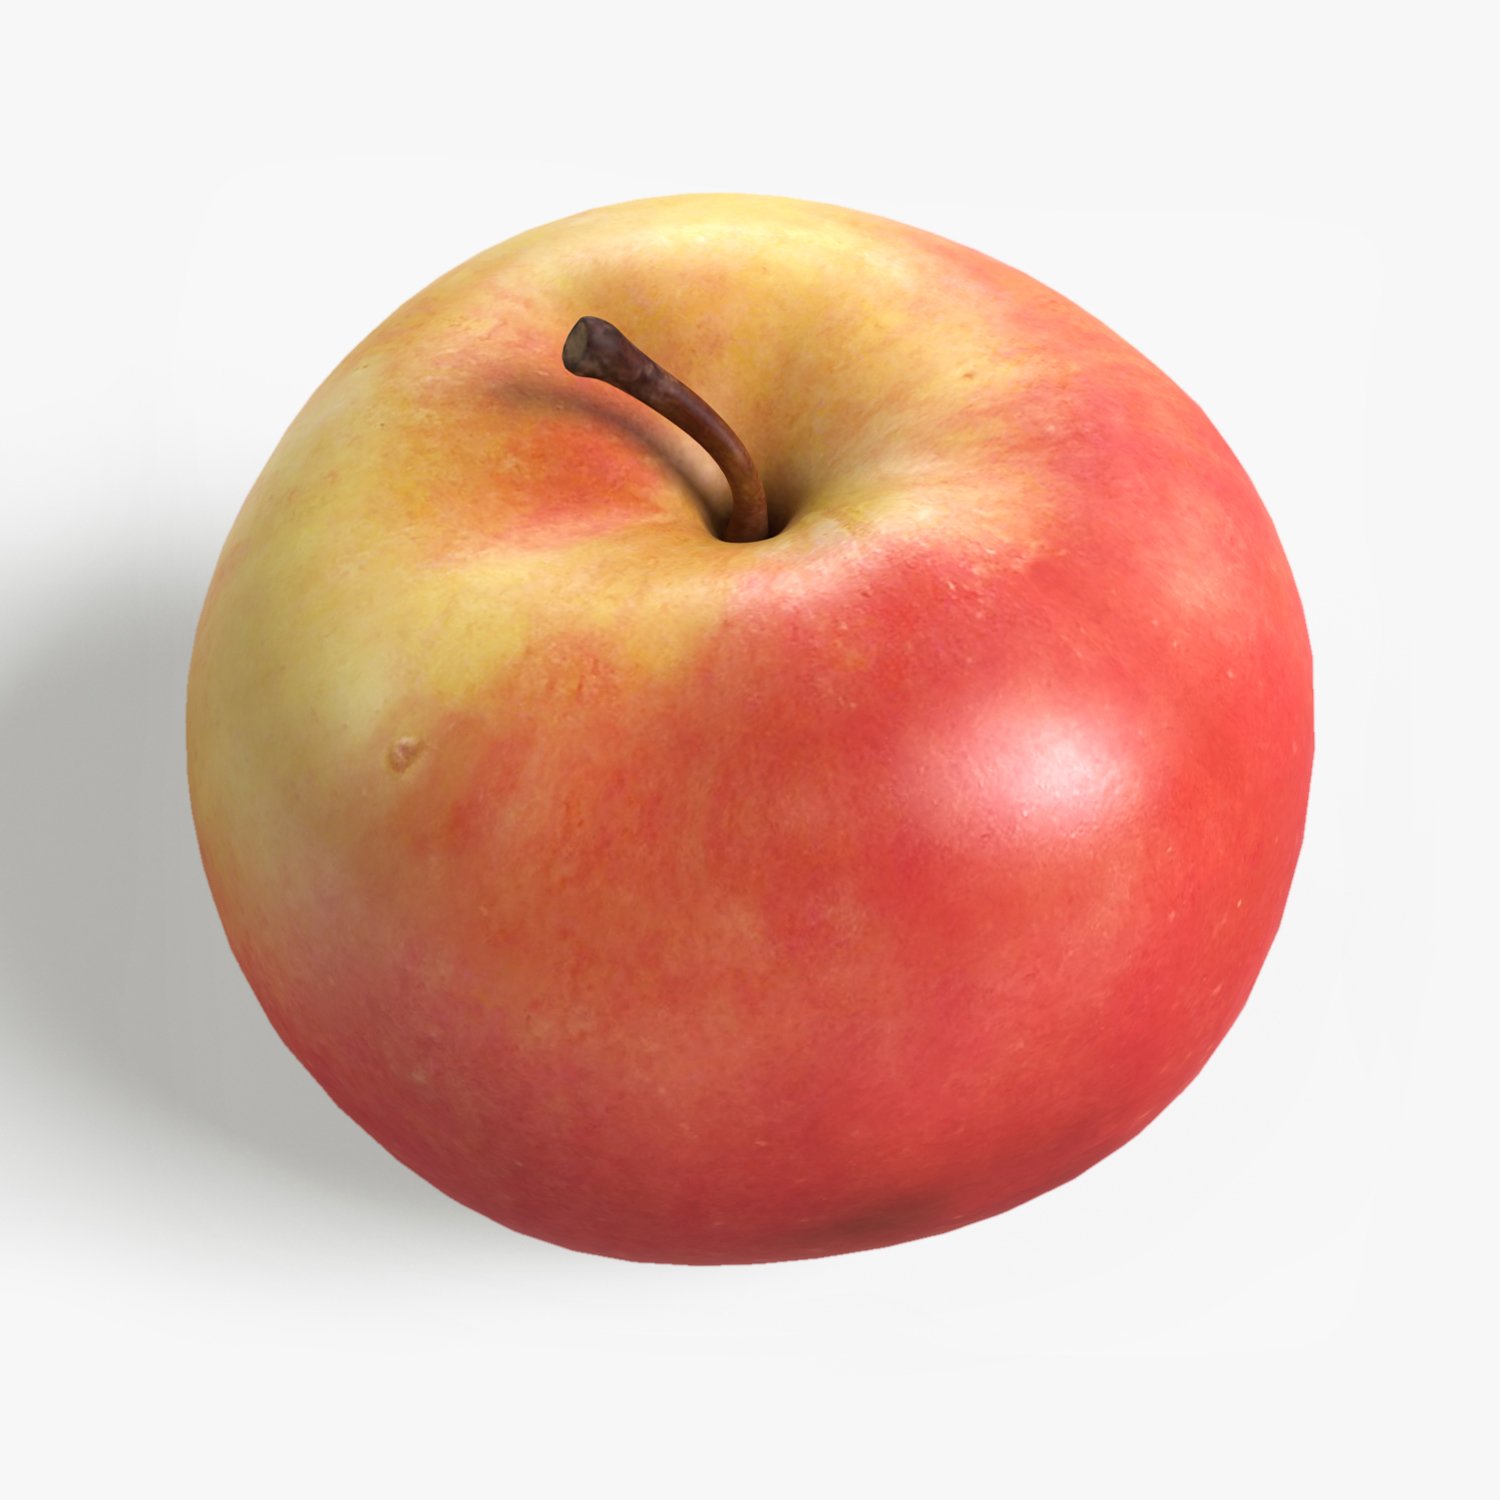 Включи 3 яблока. Яблоко 3d модель. Яблоко в 3д Макс. Яблоко с глазами реалистично. Яблоко 3д модель стеклянное.